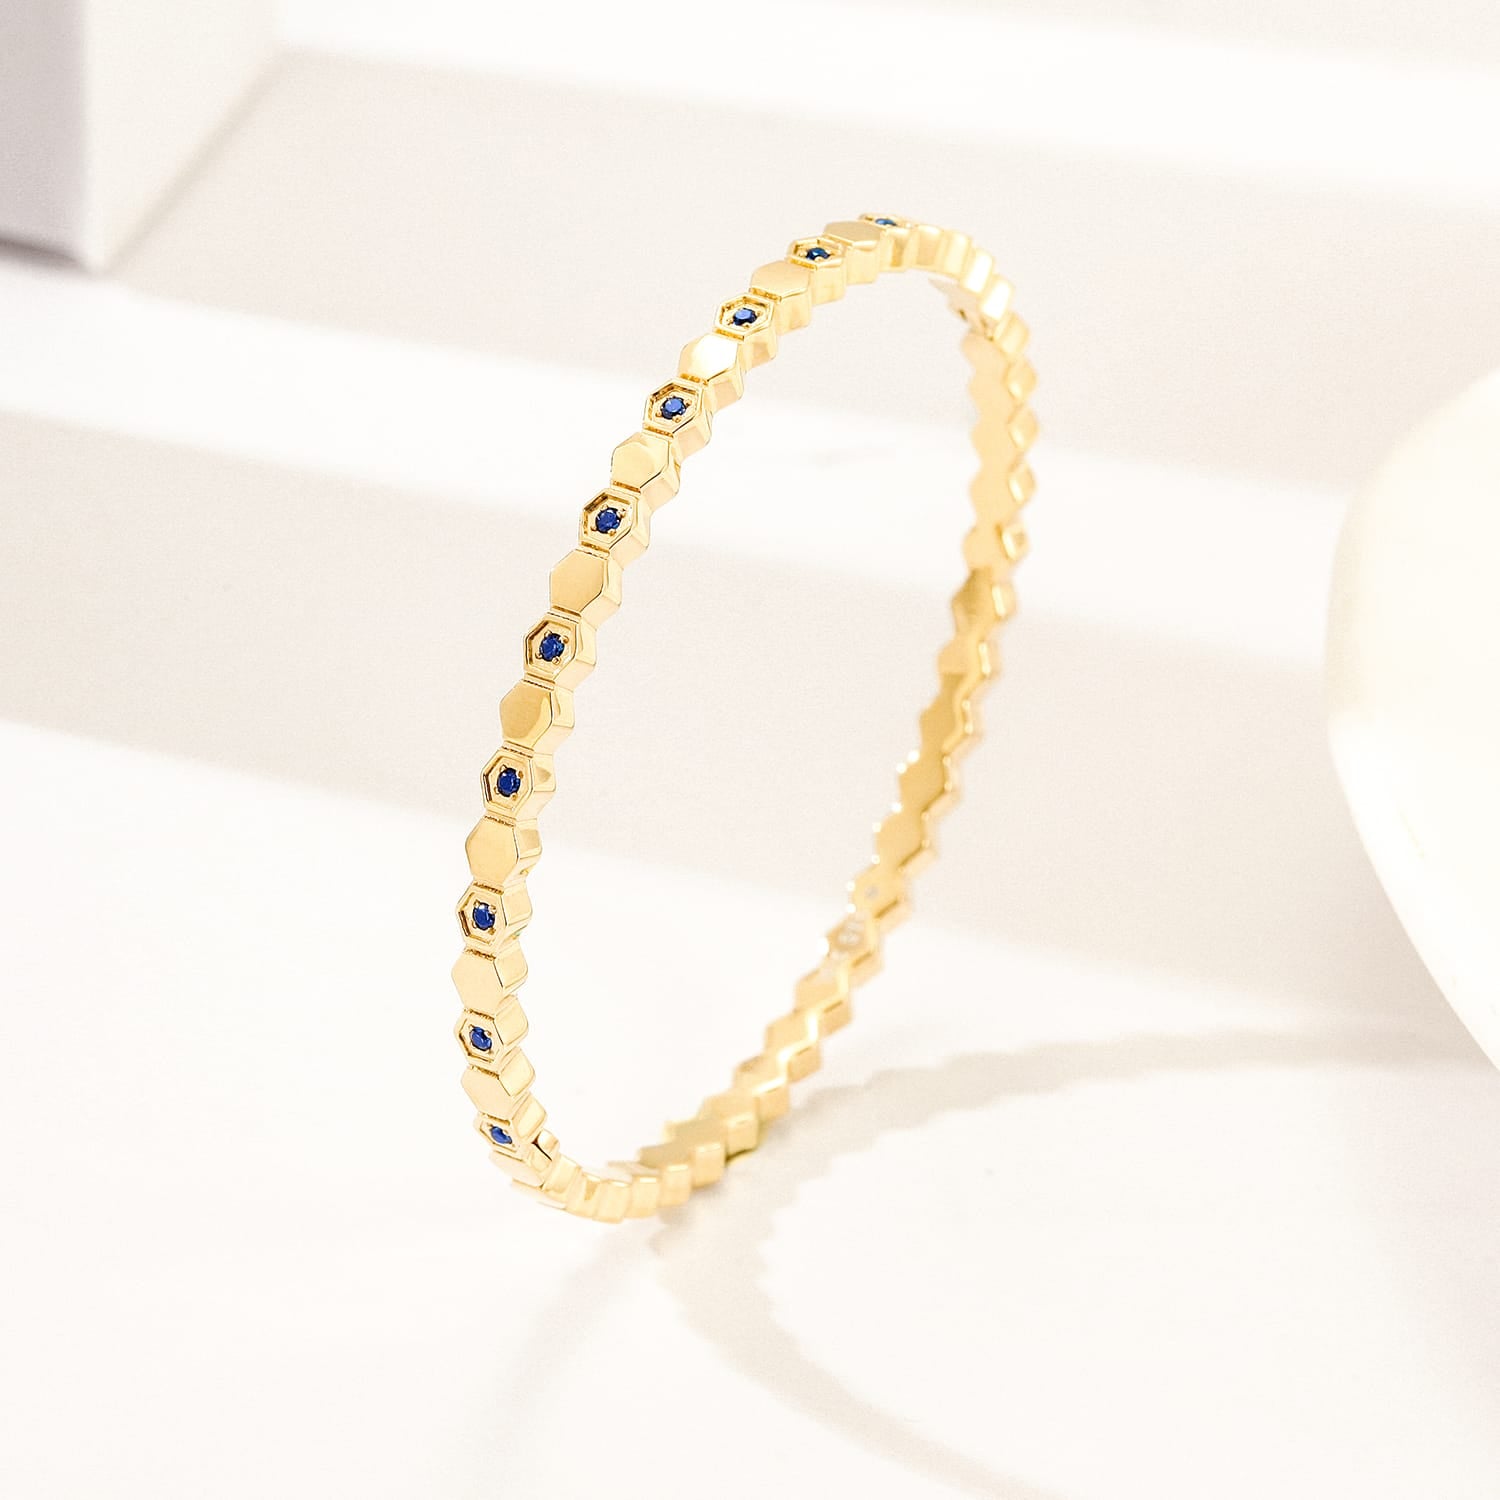 Luxury bracelet with stones